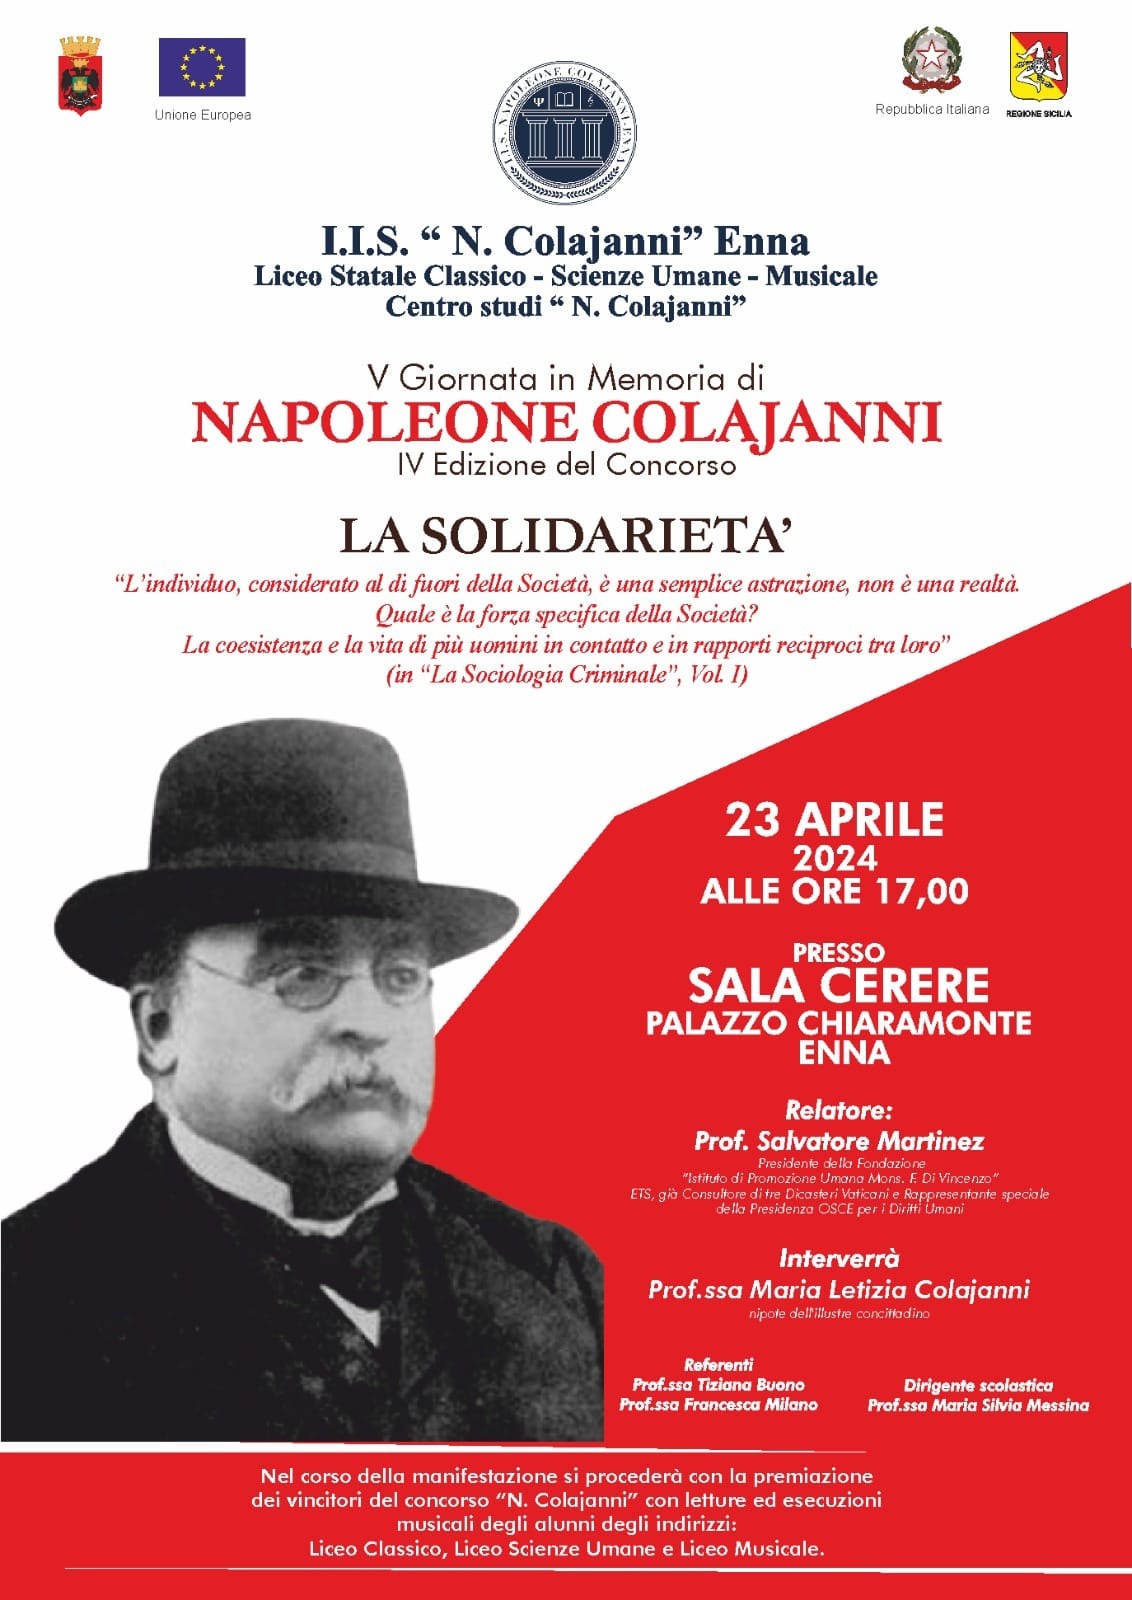 V giornata in memoria di Napoleone Colajanni - La Solidarietà